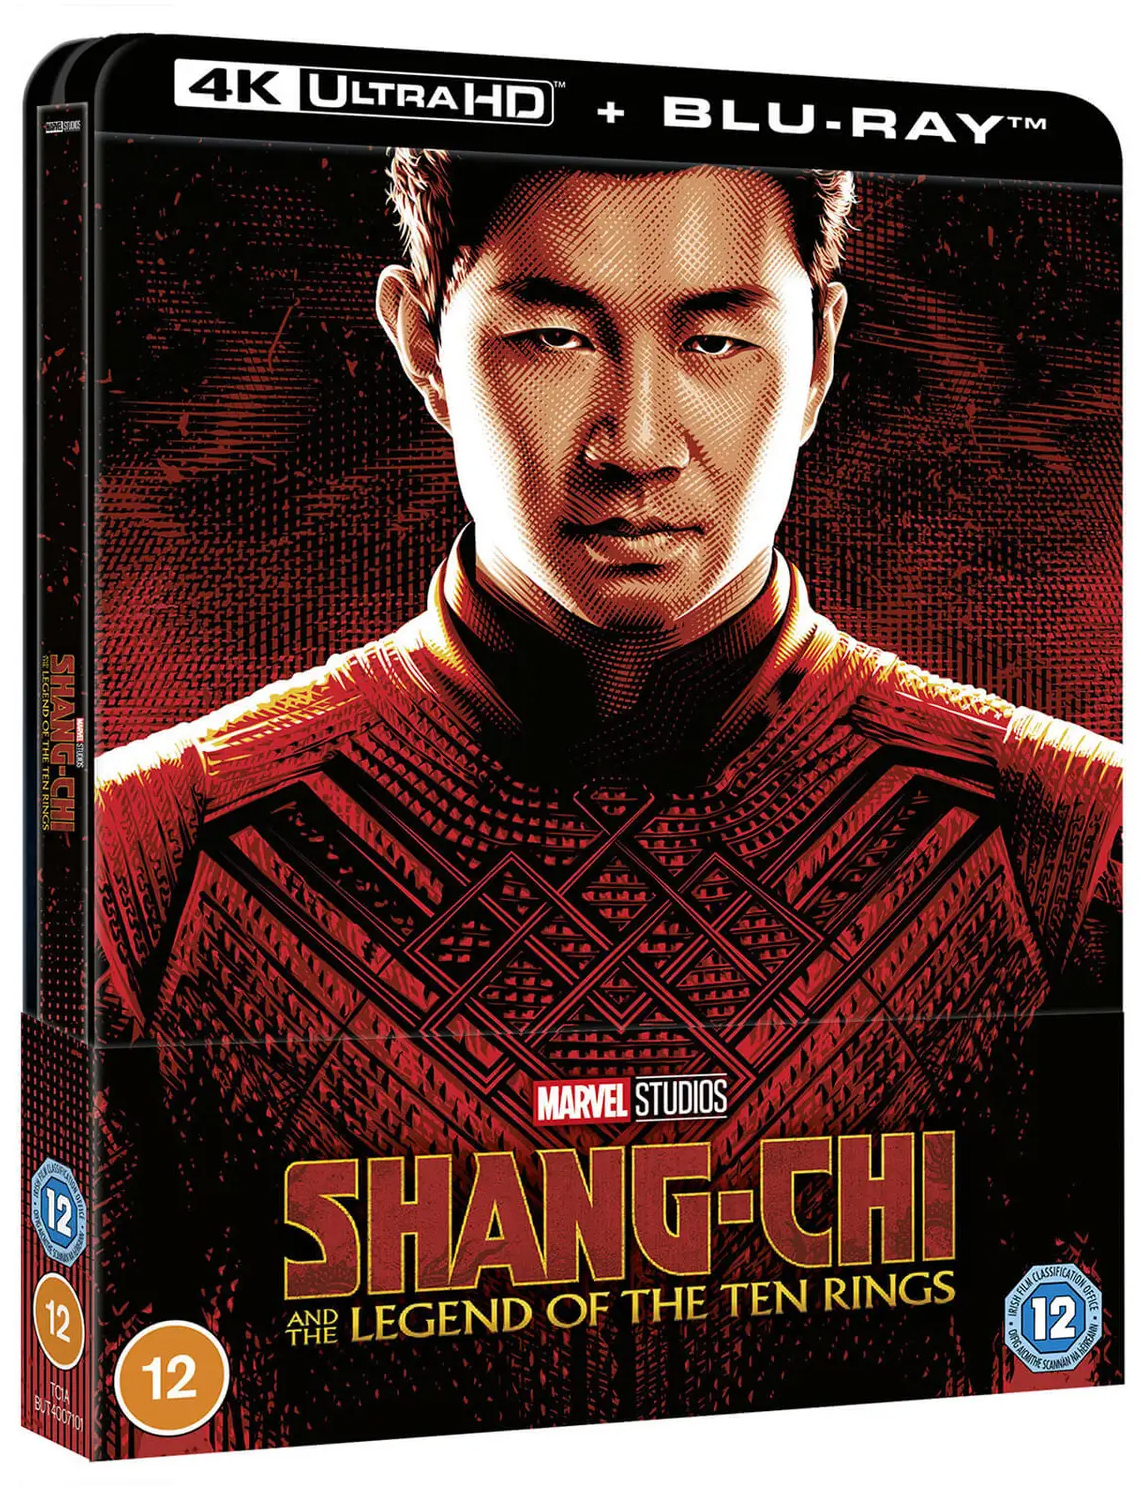 シャン・チー/テン・リングスの伝説 Shang-Chi and the Legend<br />of the Ten Rings steelbook 4K UHD zavvi スチールブック